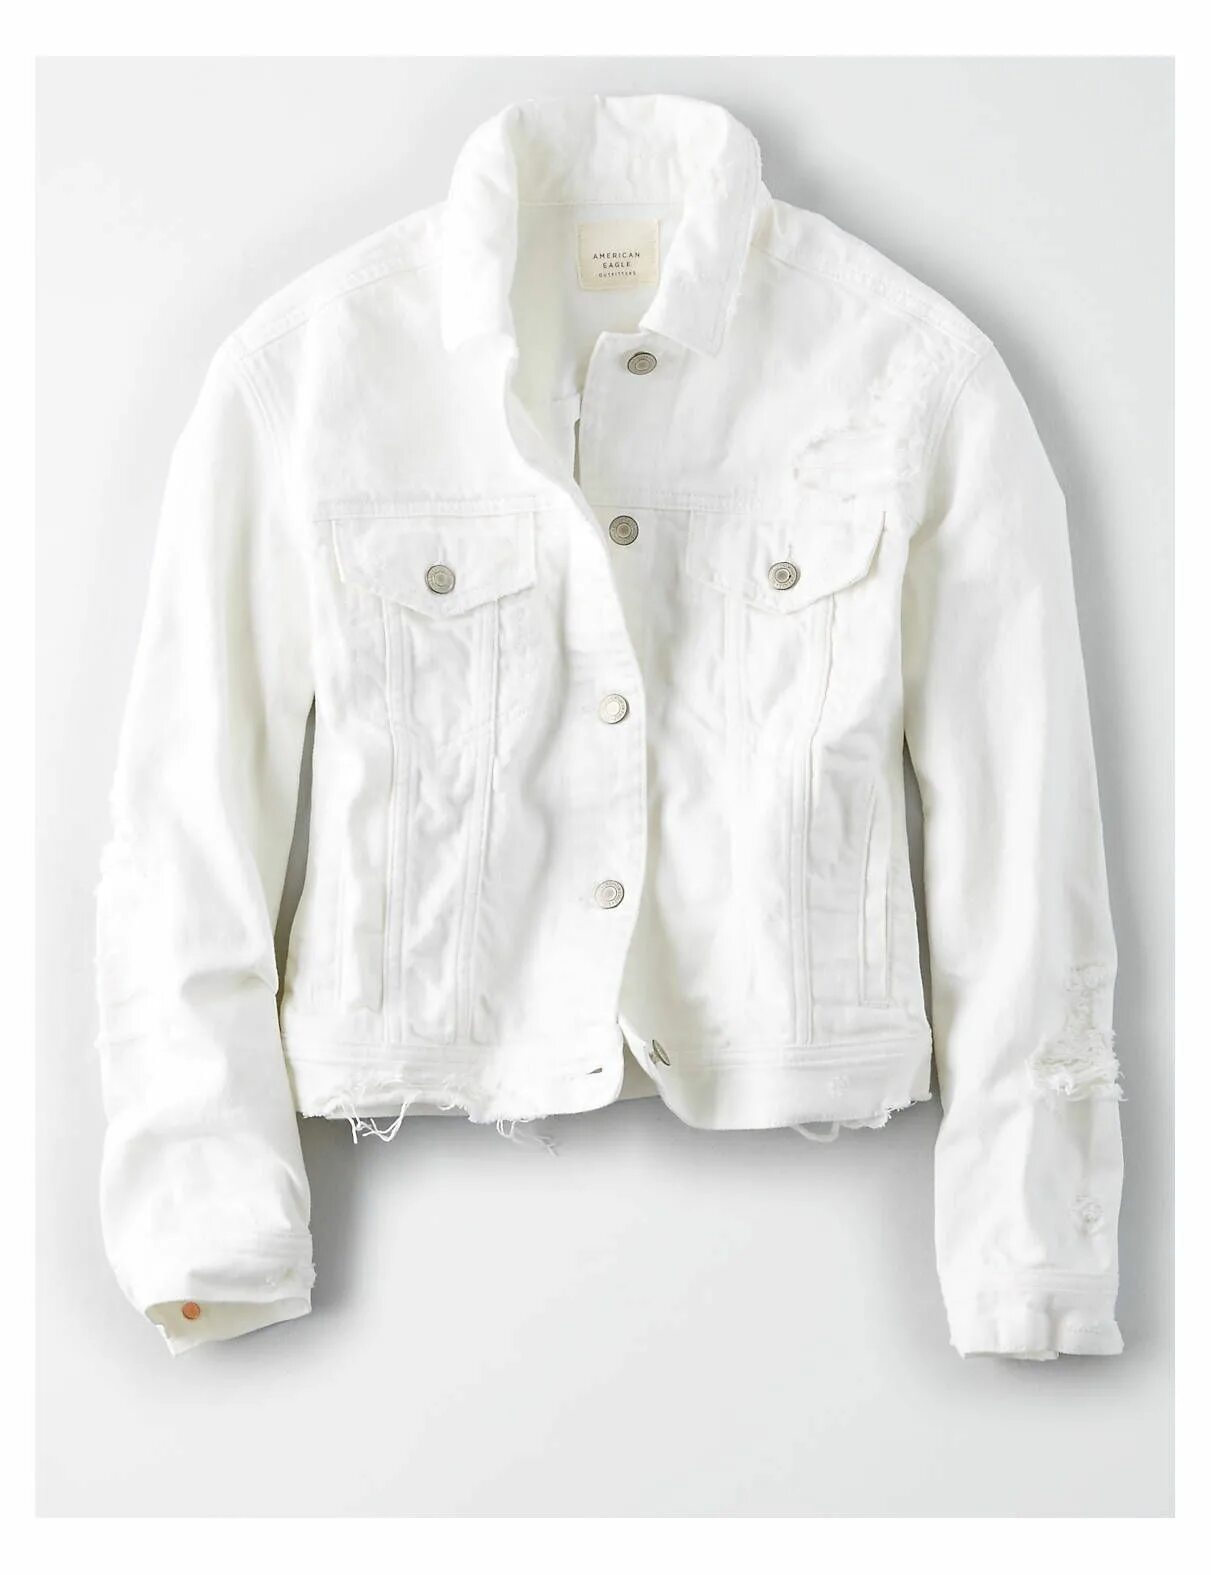 White jacket. White Denim Jacket. Итальянские белые джинсовые куртки. Джинсовая куртка с белой рубашкой. Белая джинсовая куртка с надписями.